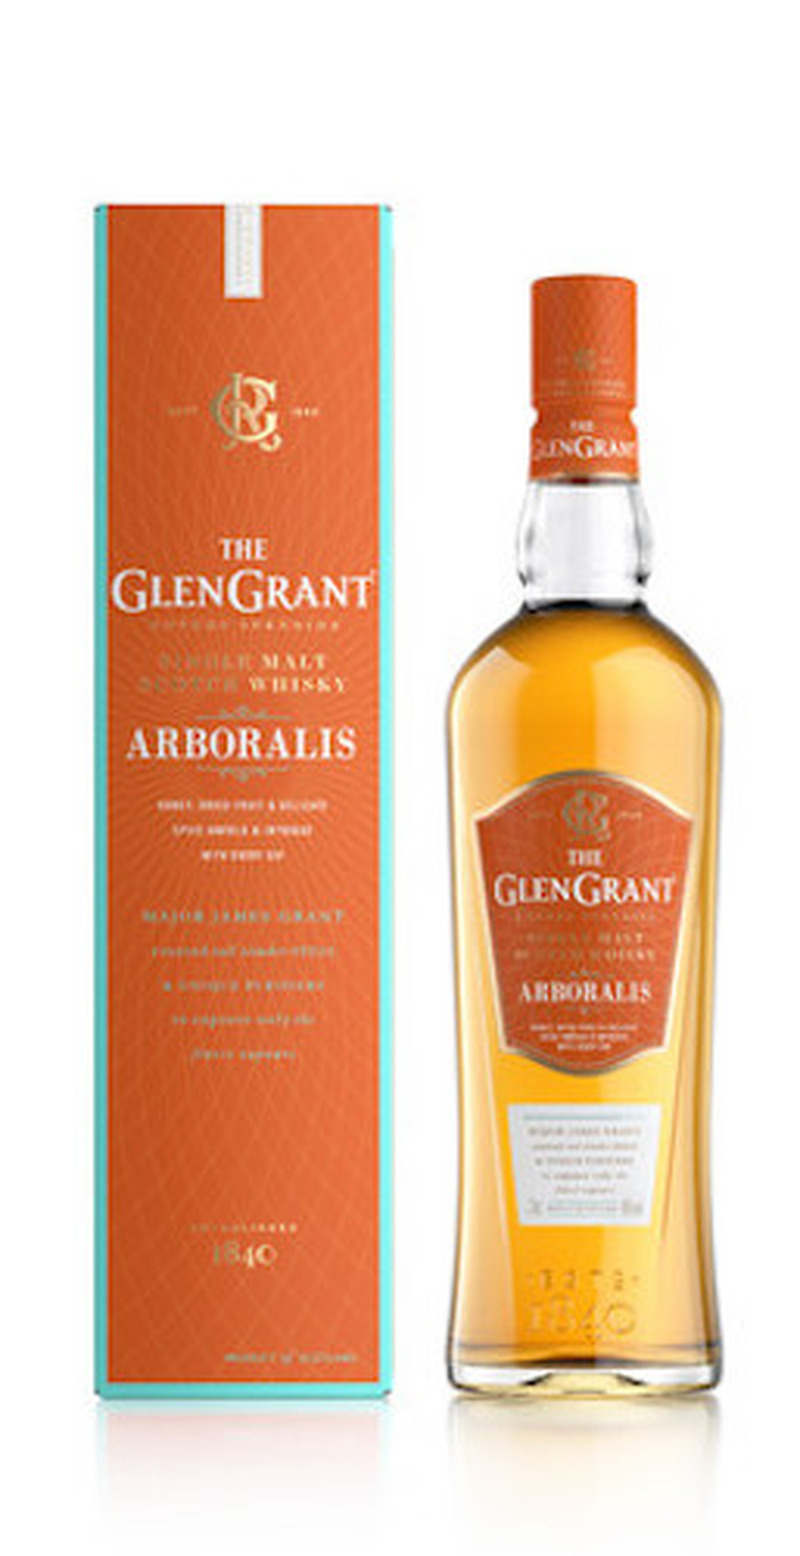 バーボン樽とシェリー樽でそれぞれ熟成された原酒を用いたシングルモルト「グレングラント アルボラリス」が新発売